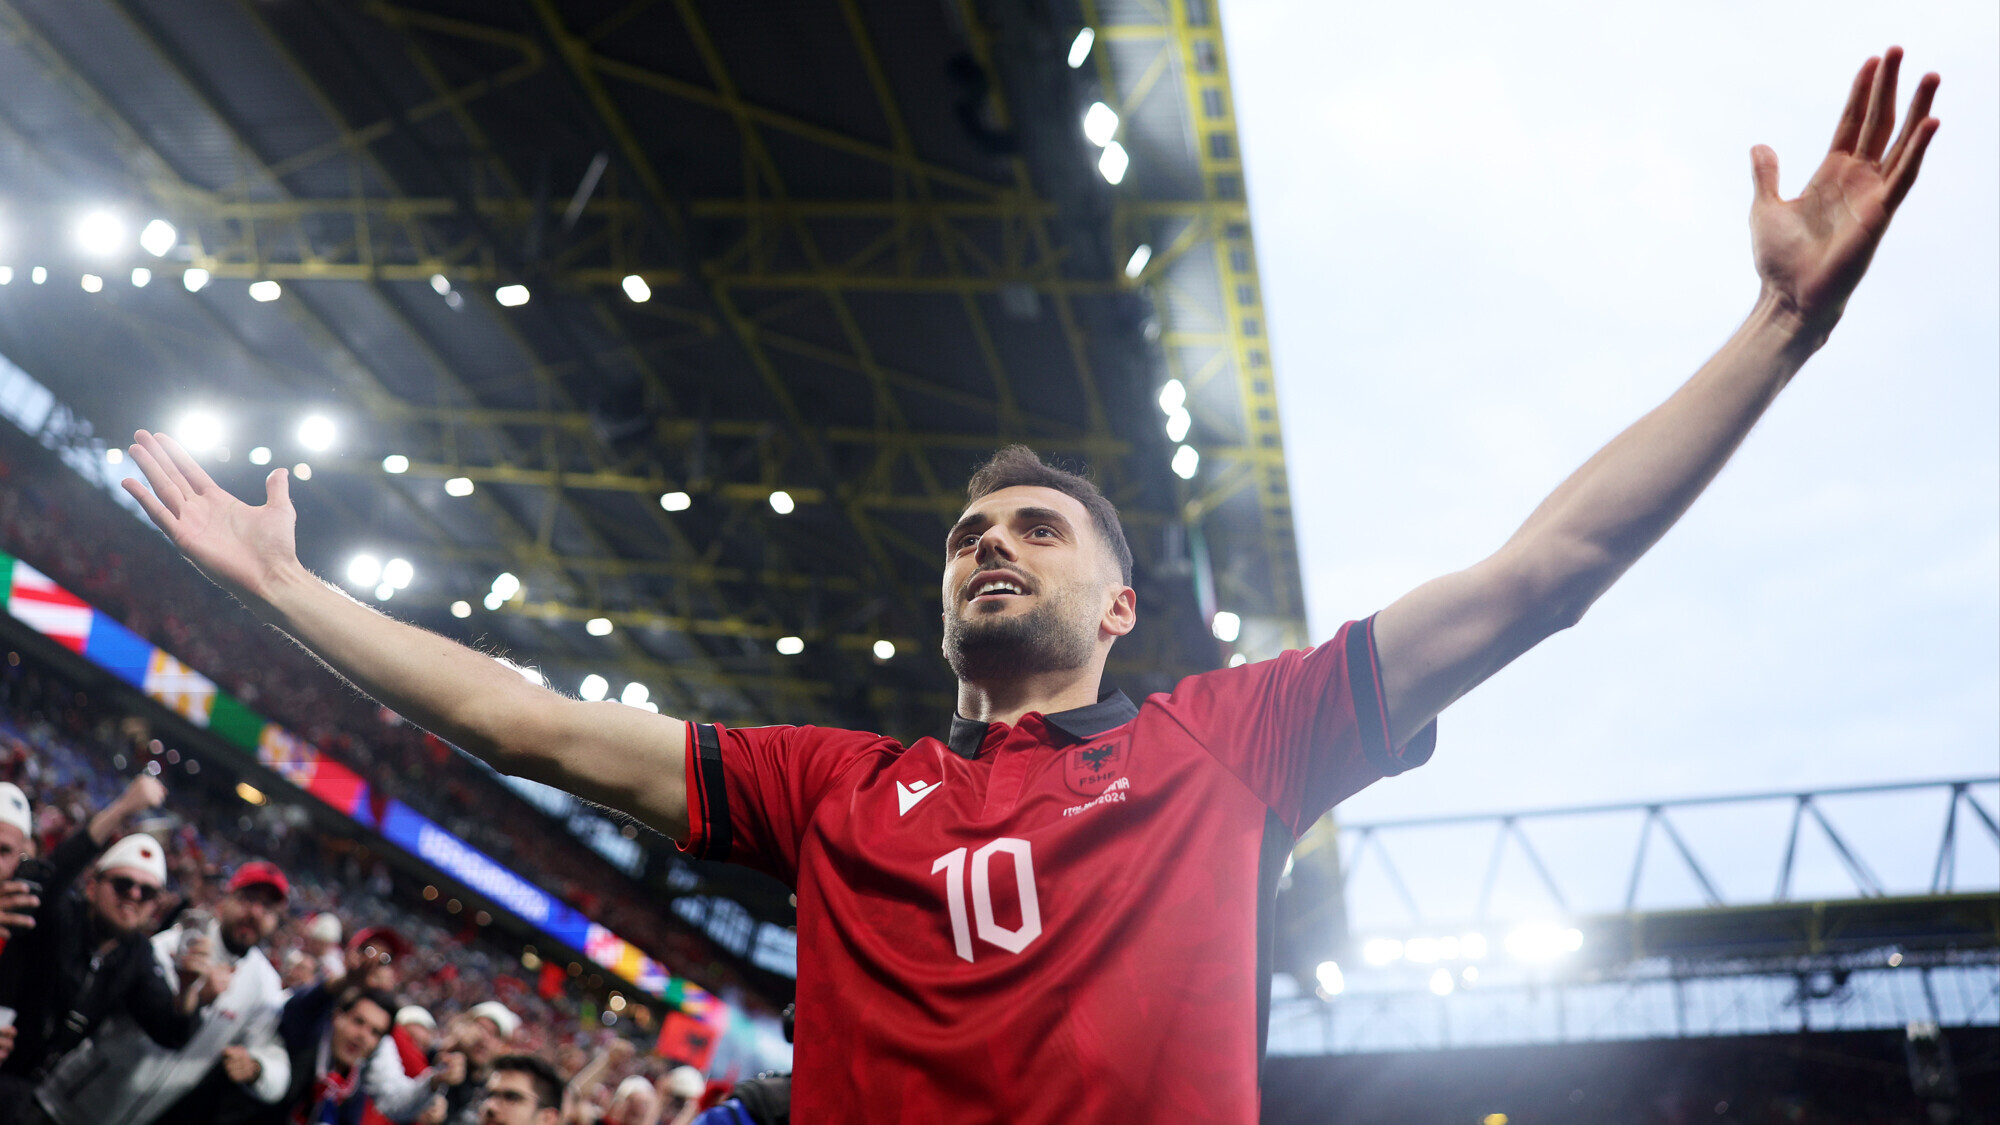 Албанец Байрами побил рекорд россиянина Кириченко, забив самый быстрый гол в истории Евро